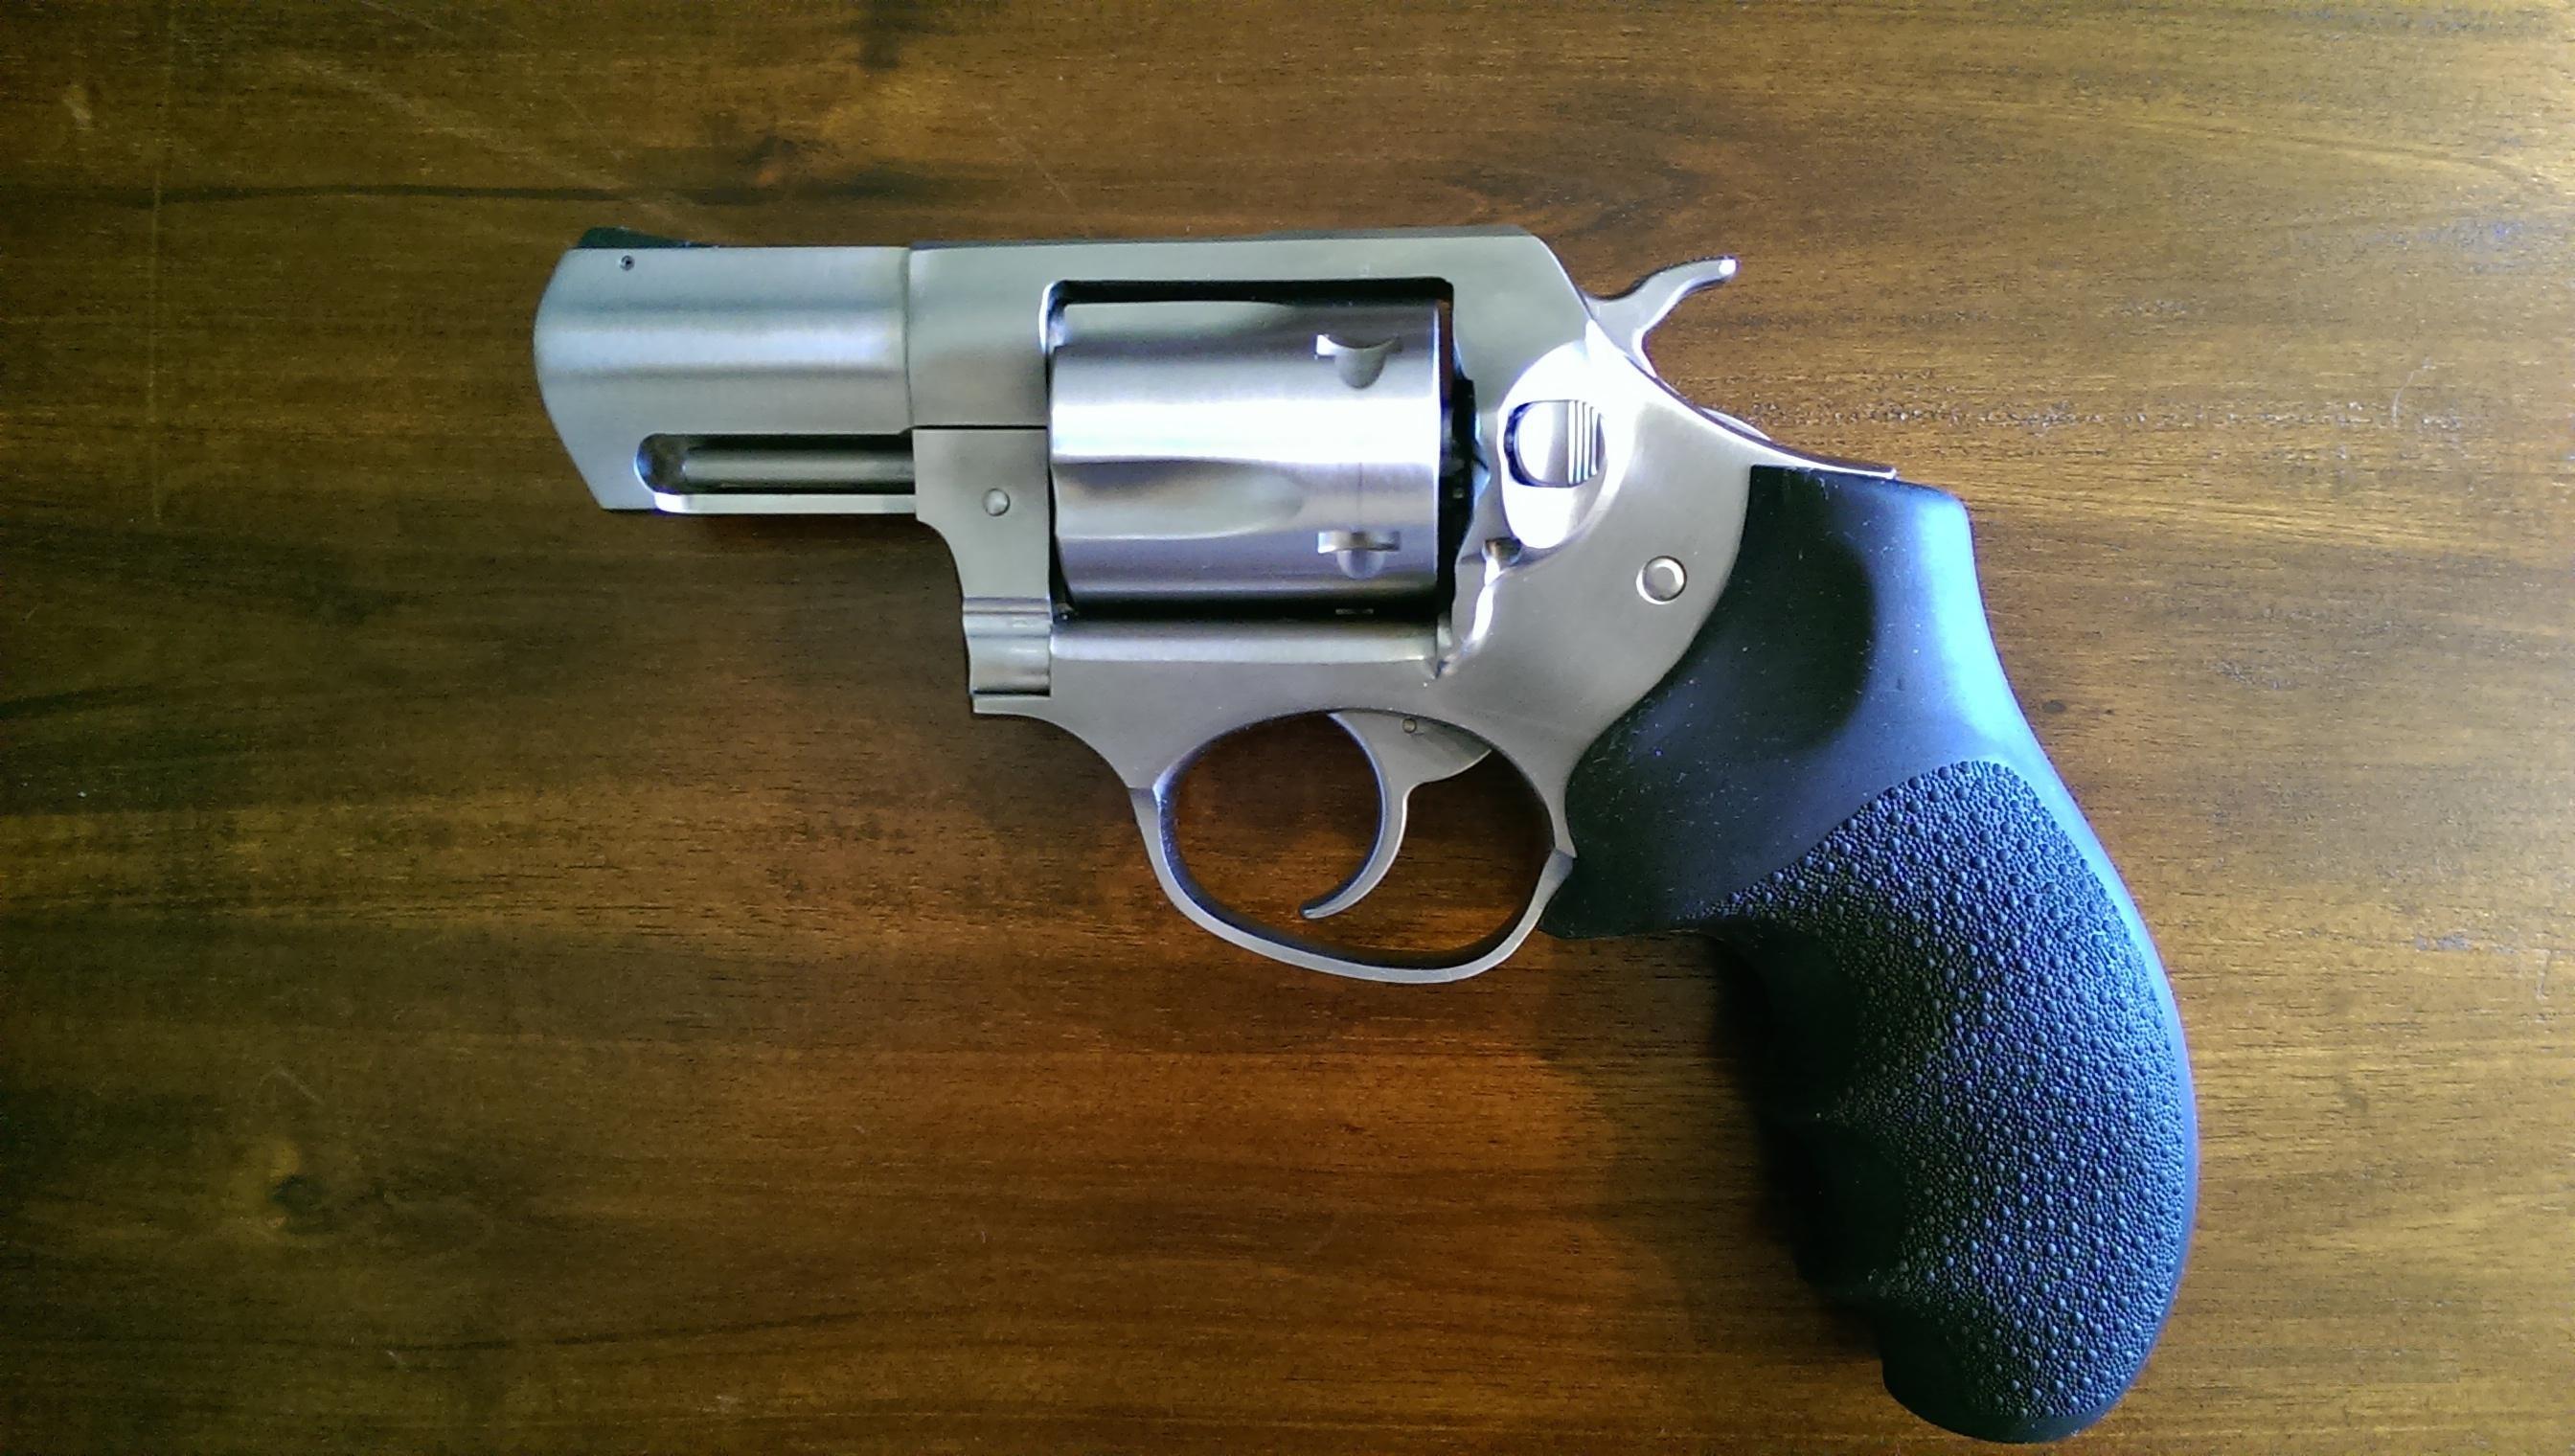 Ruger SP101 357 Magnum